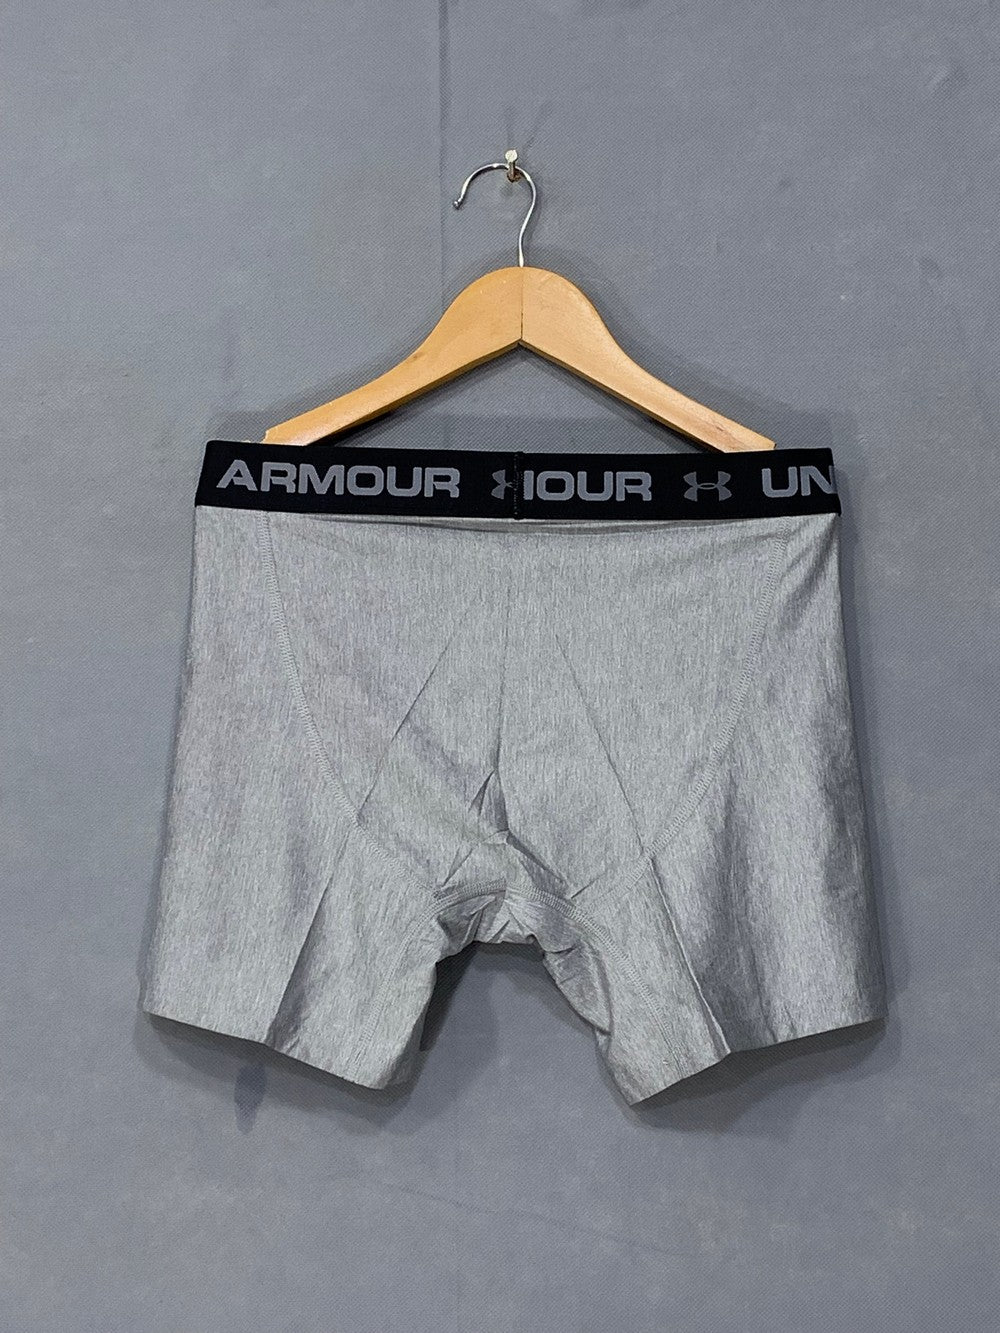 Under Armour Original Branded Boxer Underwear For Men